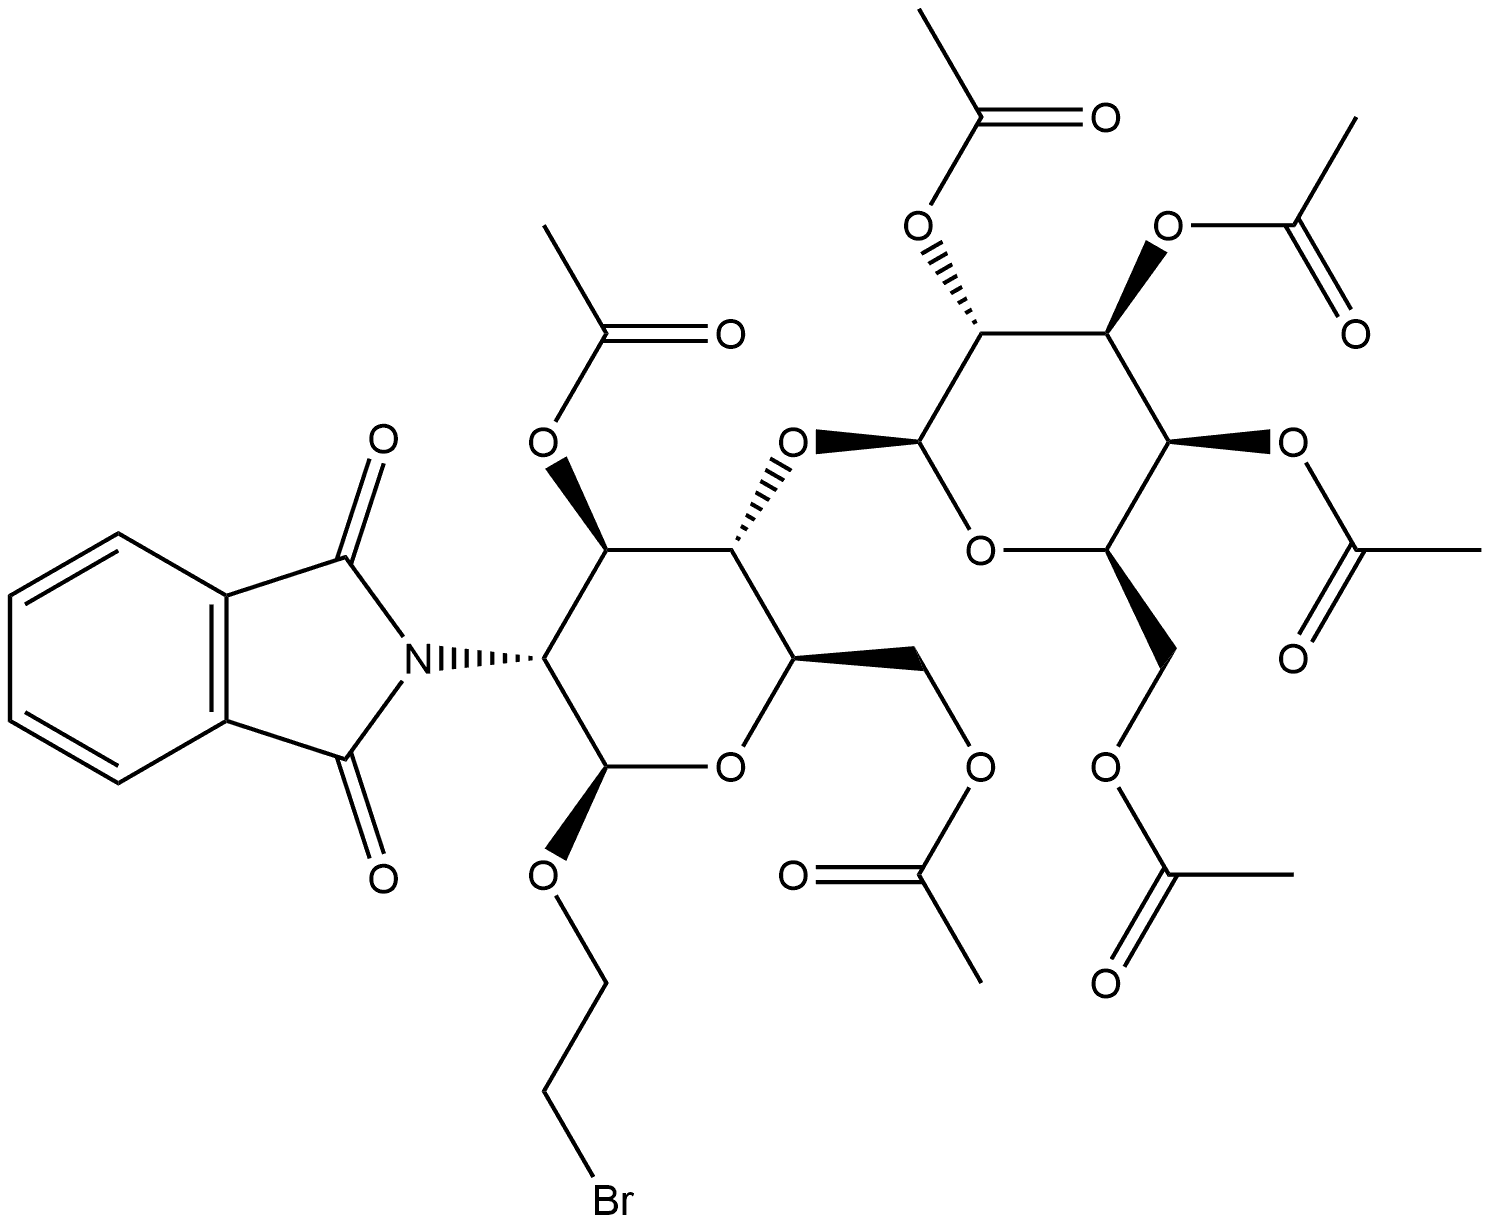 β-D-Glucopyranoside, 2-bromoethyl 2-deoxy-2-(1,3-dihydro-1,3-dioxo-2H-isoindol-2-yl)-4-O-(2,3,4,6-tetra-O-acetyl-β-D-galactopyranosyl)-, 3,6-diacetate